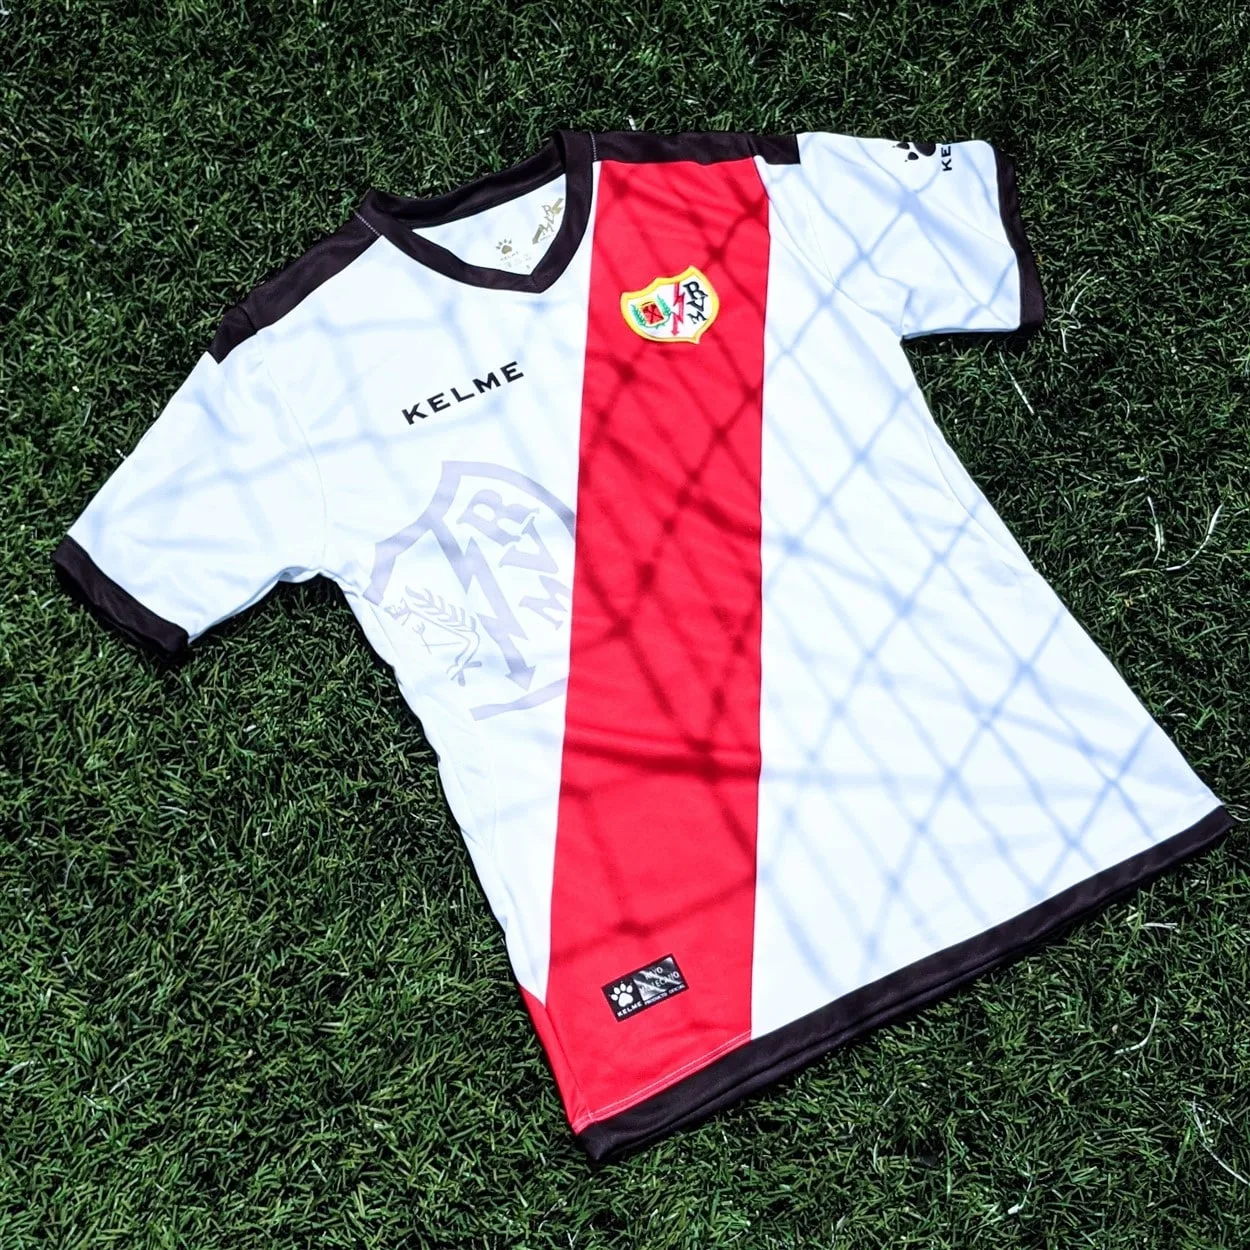 Rayo Vallecano football kit jersey - laliga football kit